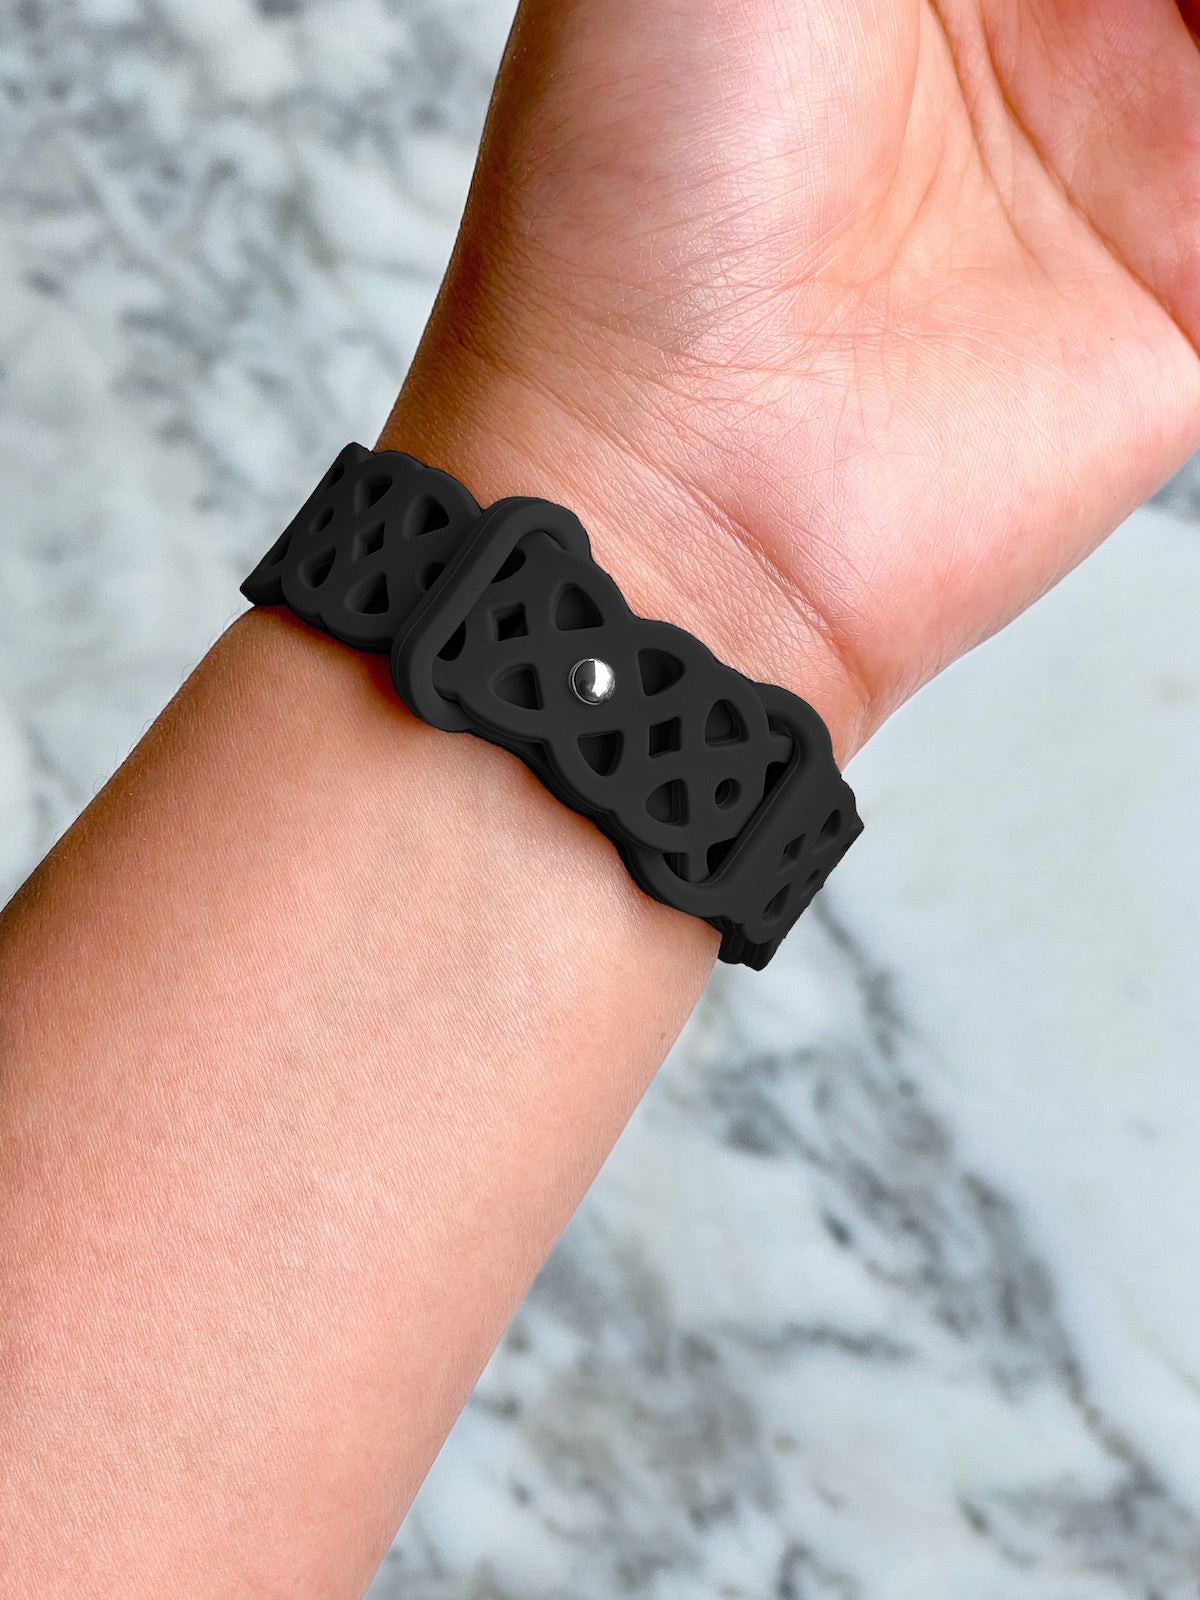 Black Silikon Hoola Loop | Armband für Apple Watch (Schwarz)-Apple Watch Armbänder kaufen #farbe_schwarz